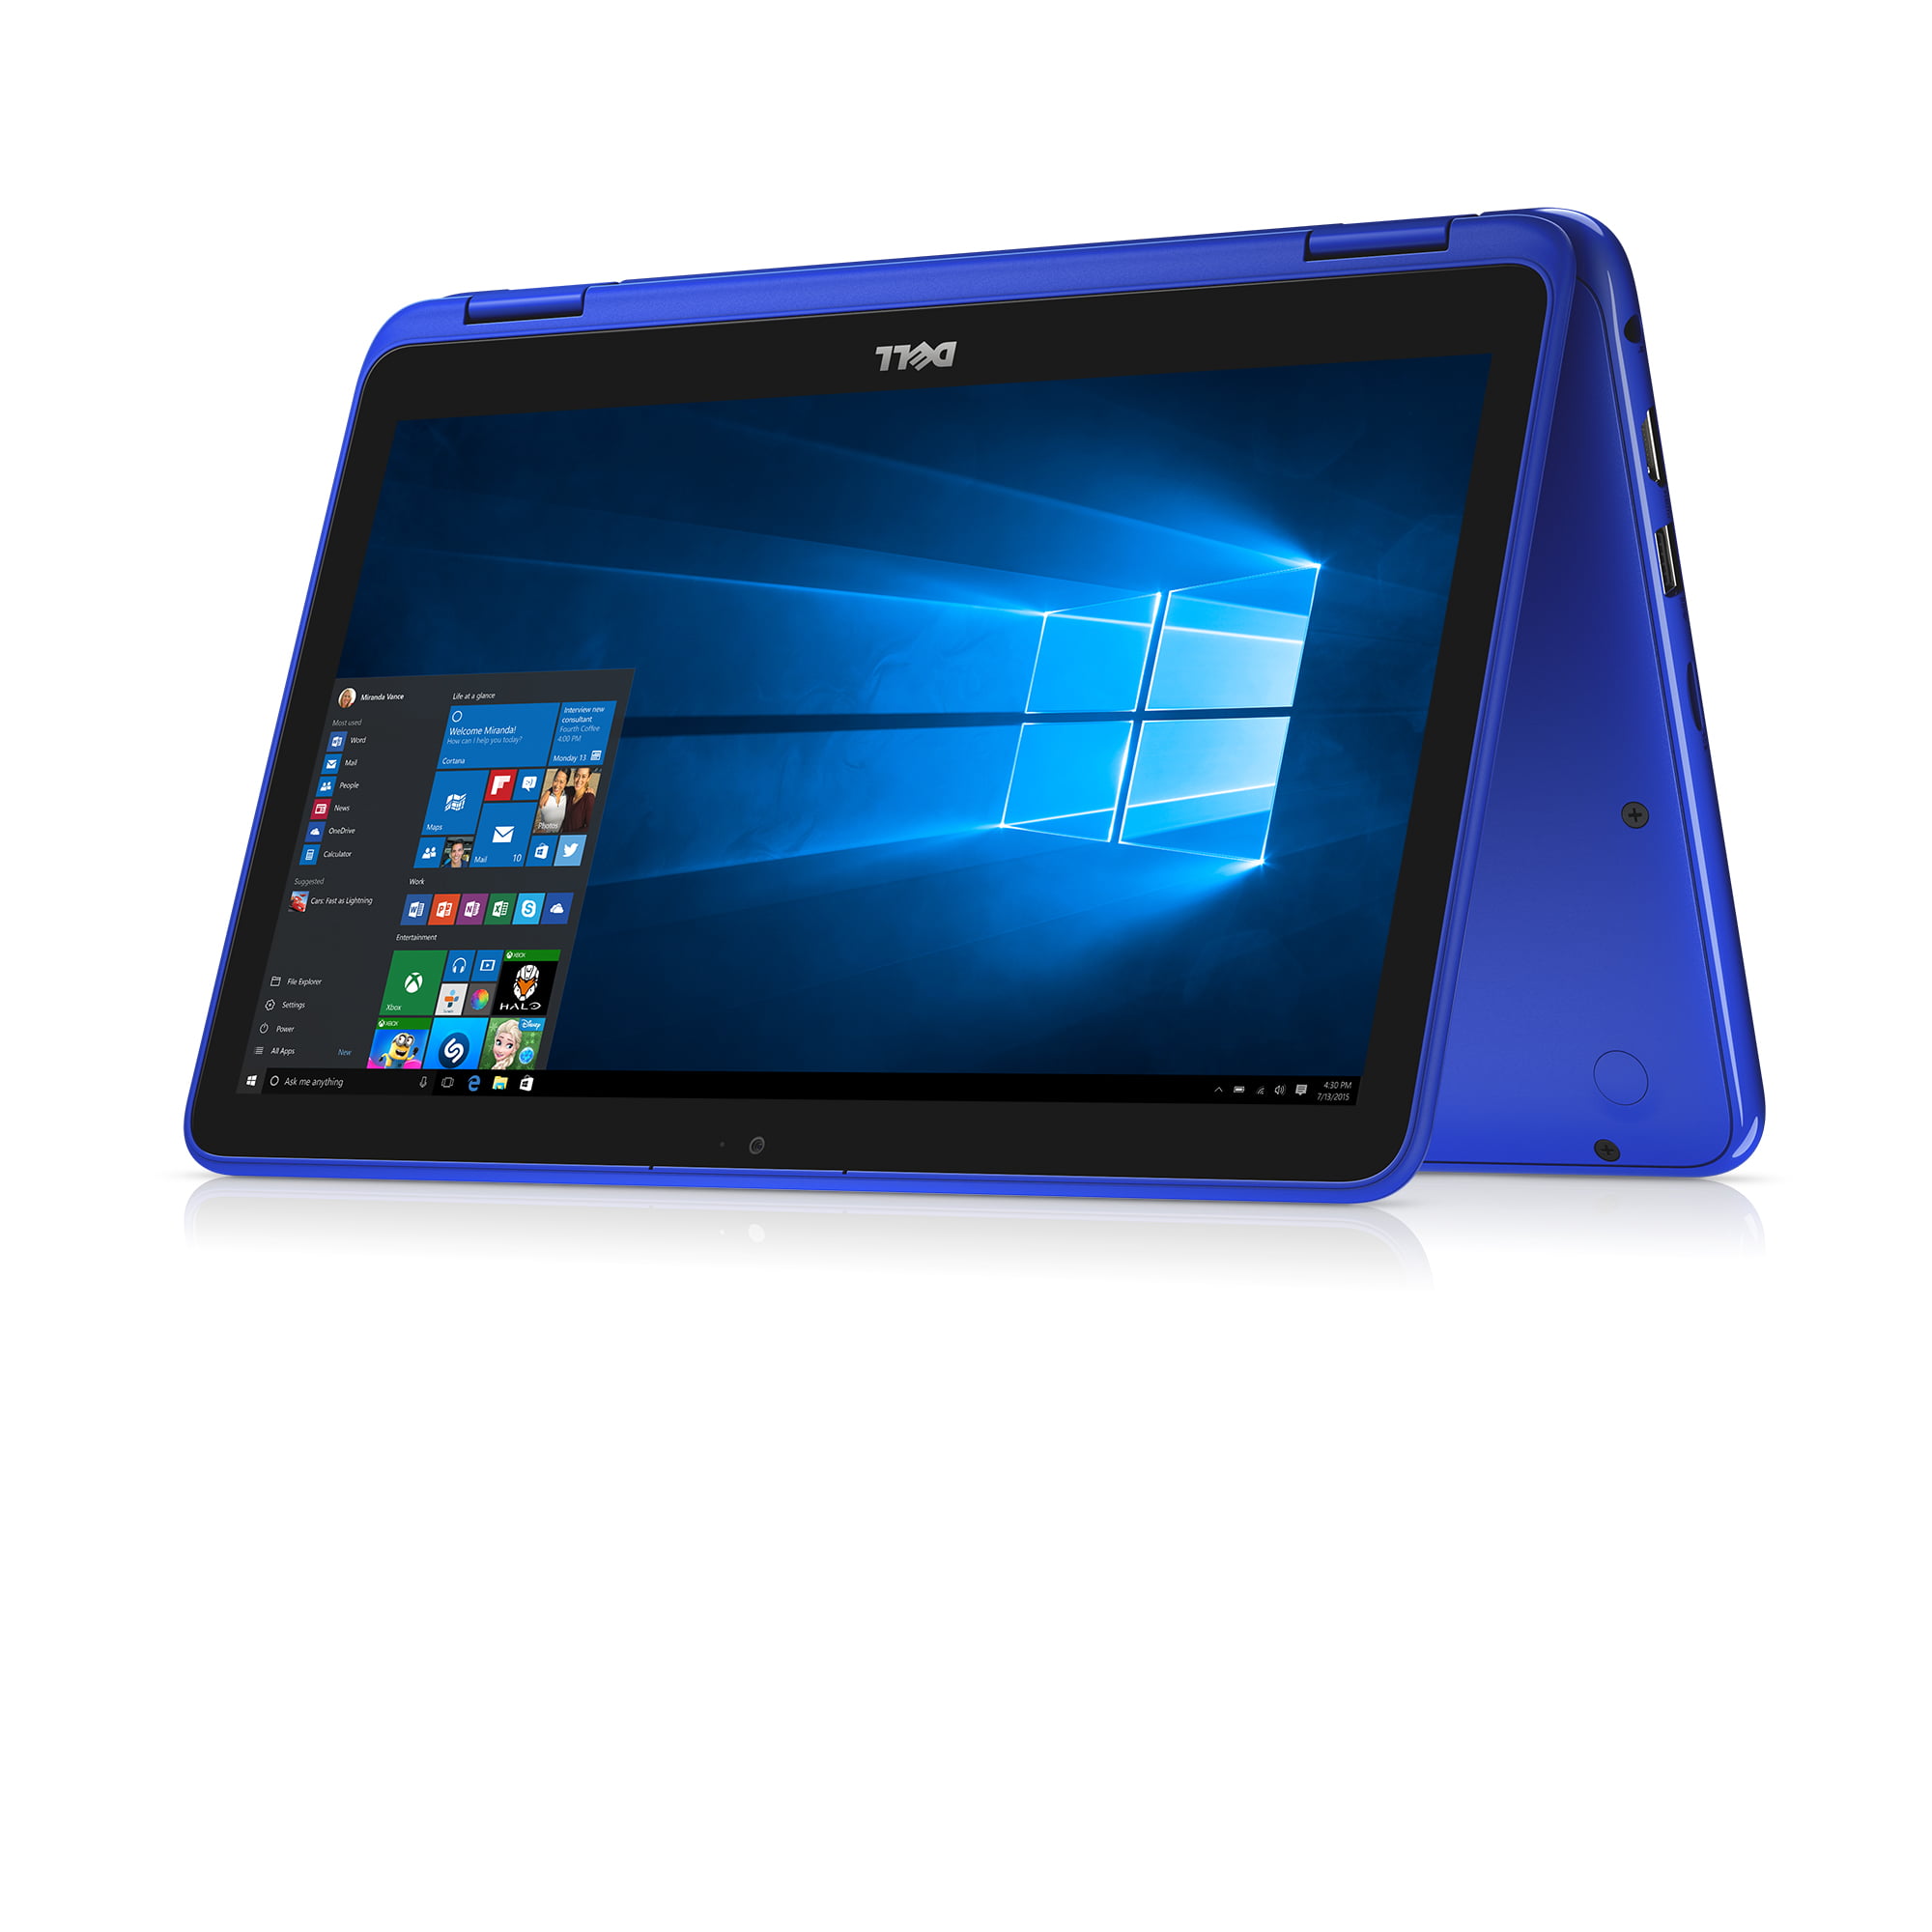 Dell Inspiron 11 3000 2 In 1 Blue 11 6 Inch Hd Intel Pentium Processor N3710 4gb 1600mhz Ddr3l 500gb 5400 Rpm Hard Intel Hd Graphics Walmart Com Walmart Com